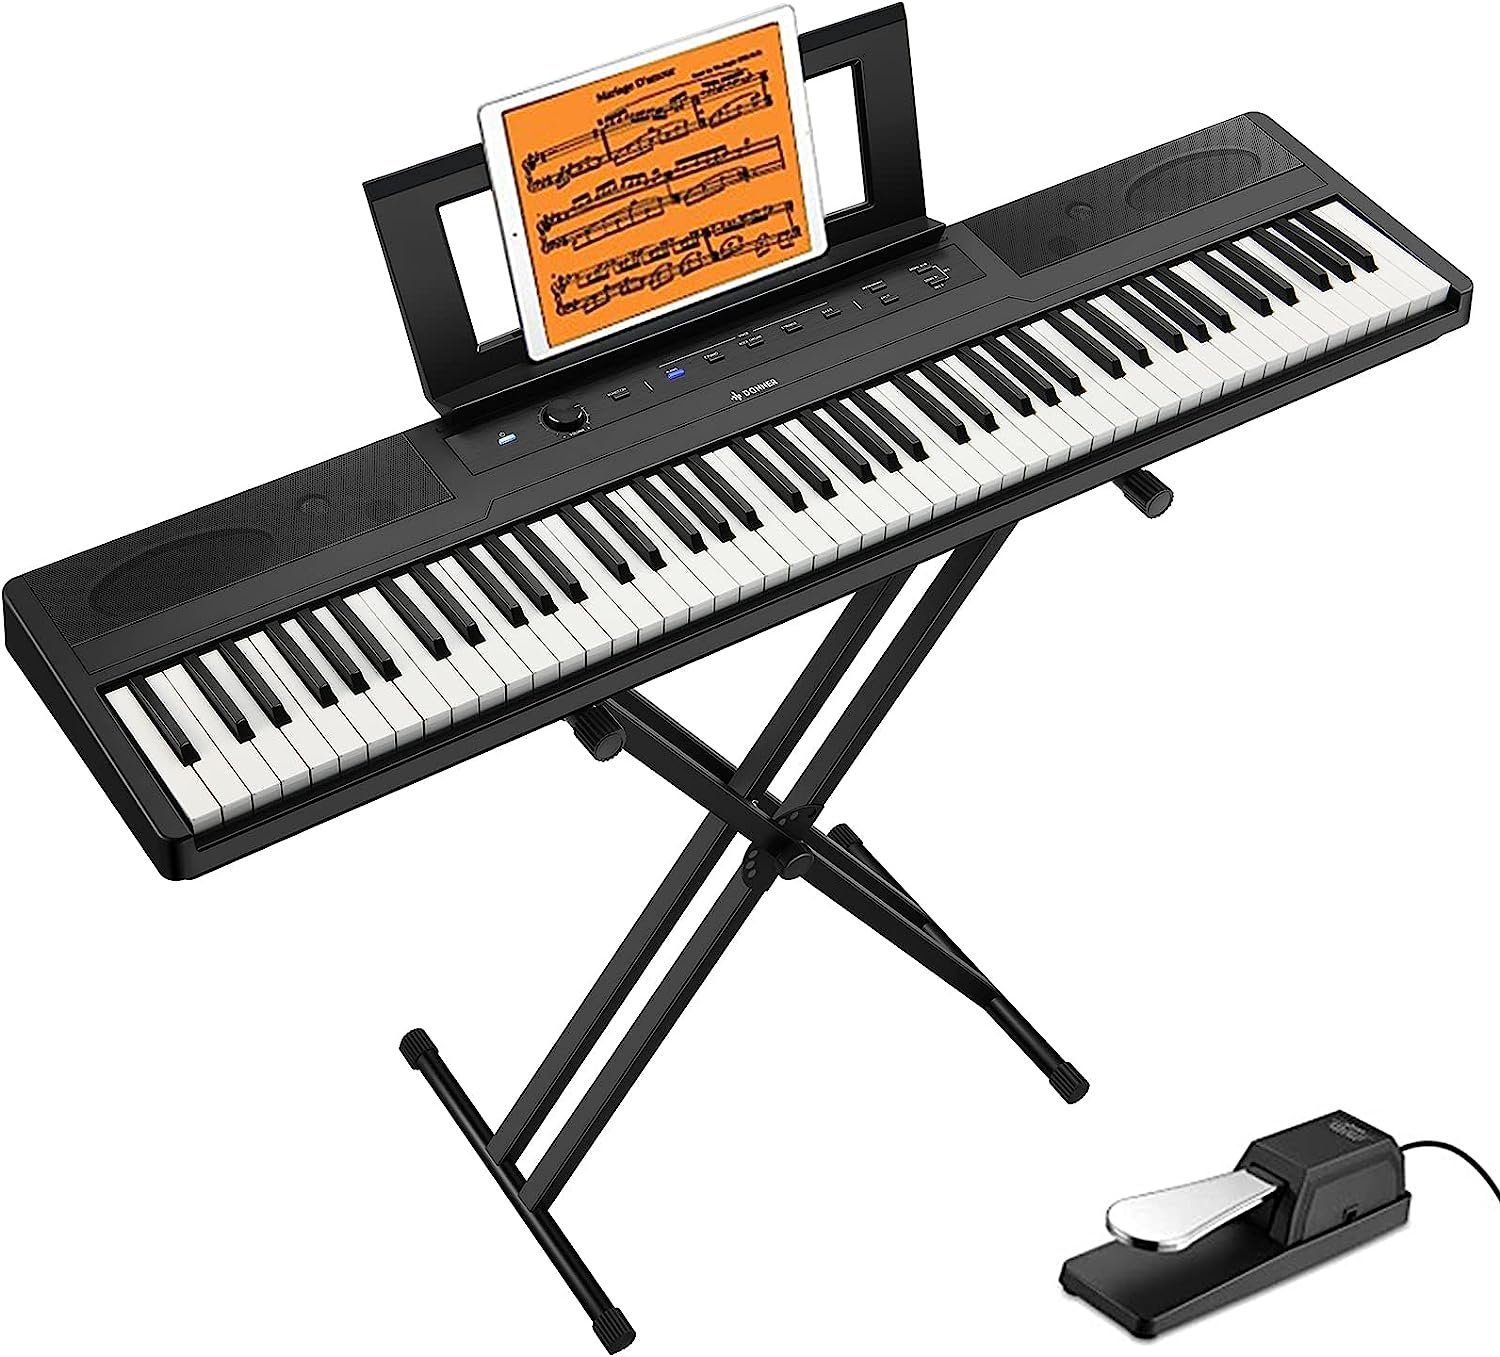 Donner Keyboard DEP-45 E Piano Digital Piano Keyboard 88 tasten, (1x  Keyboard, 1x Ständer, 1x Sustain-Pedal), mit Pedal,ideal fur Piano -Einsteiger,Multimedia-Bedienfeld,Ständer